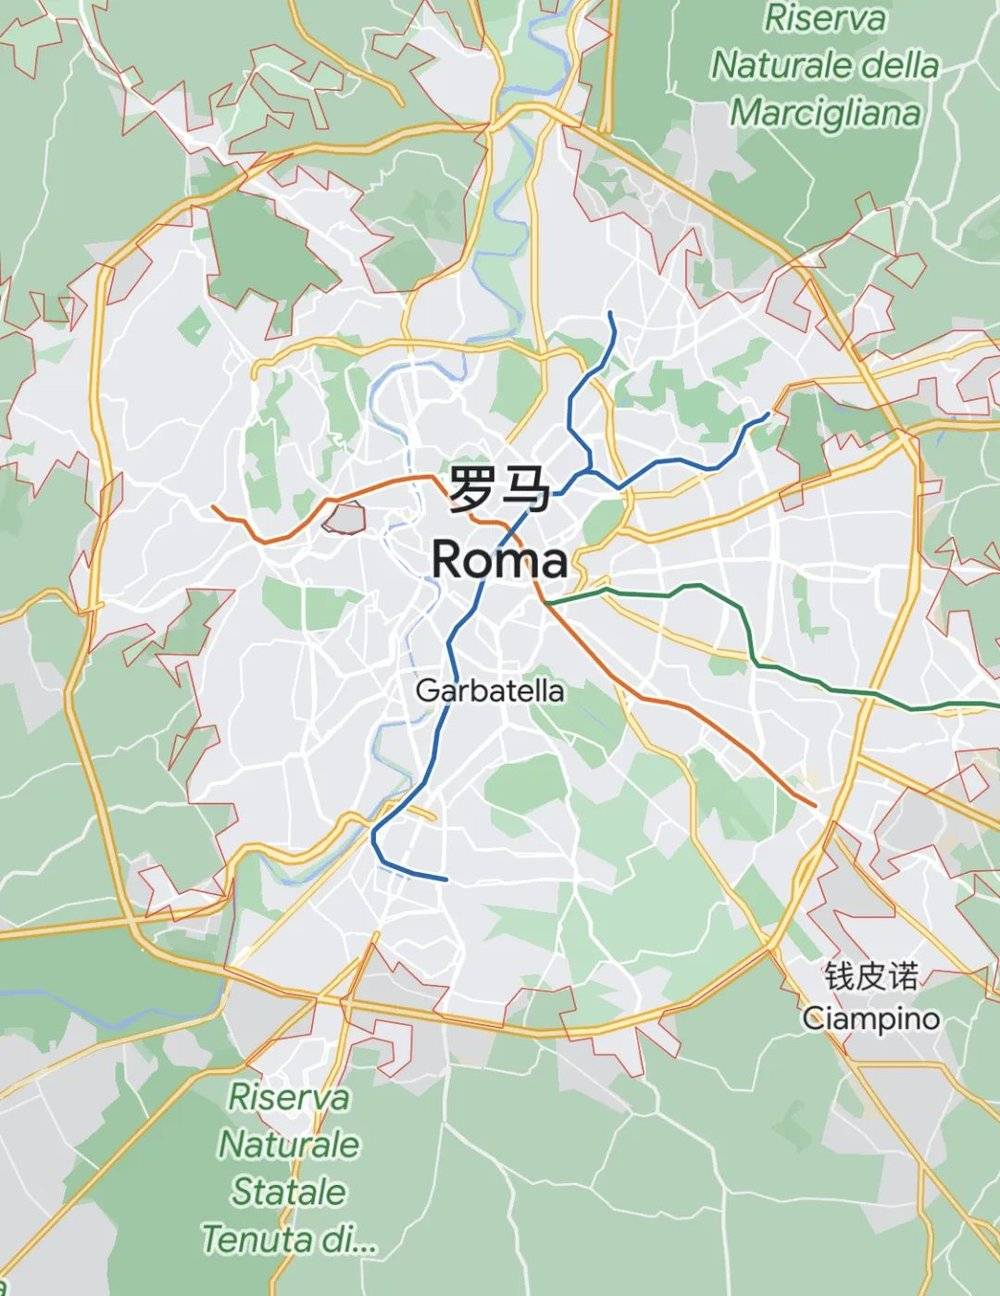 罗马道路图 | 谷歌地图<br>